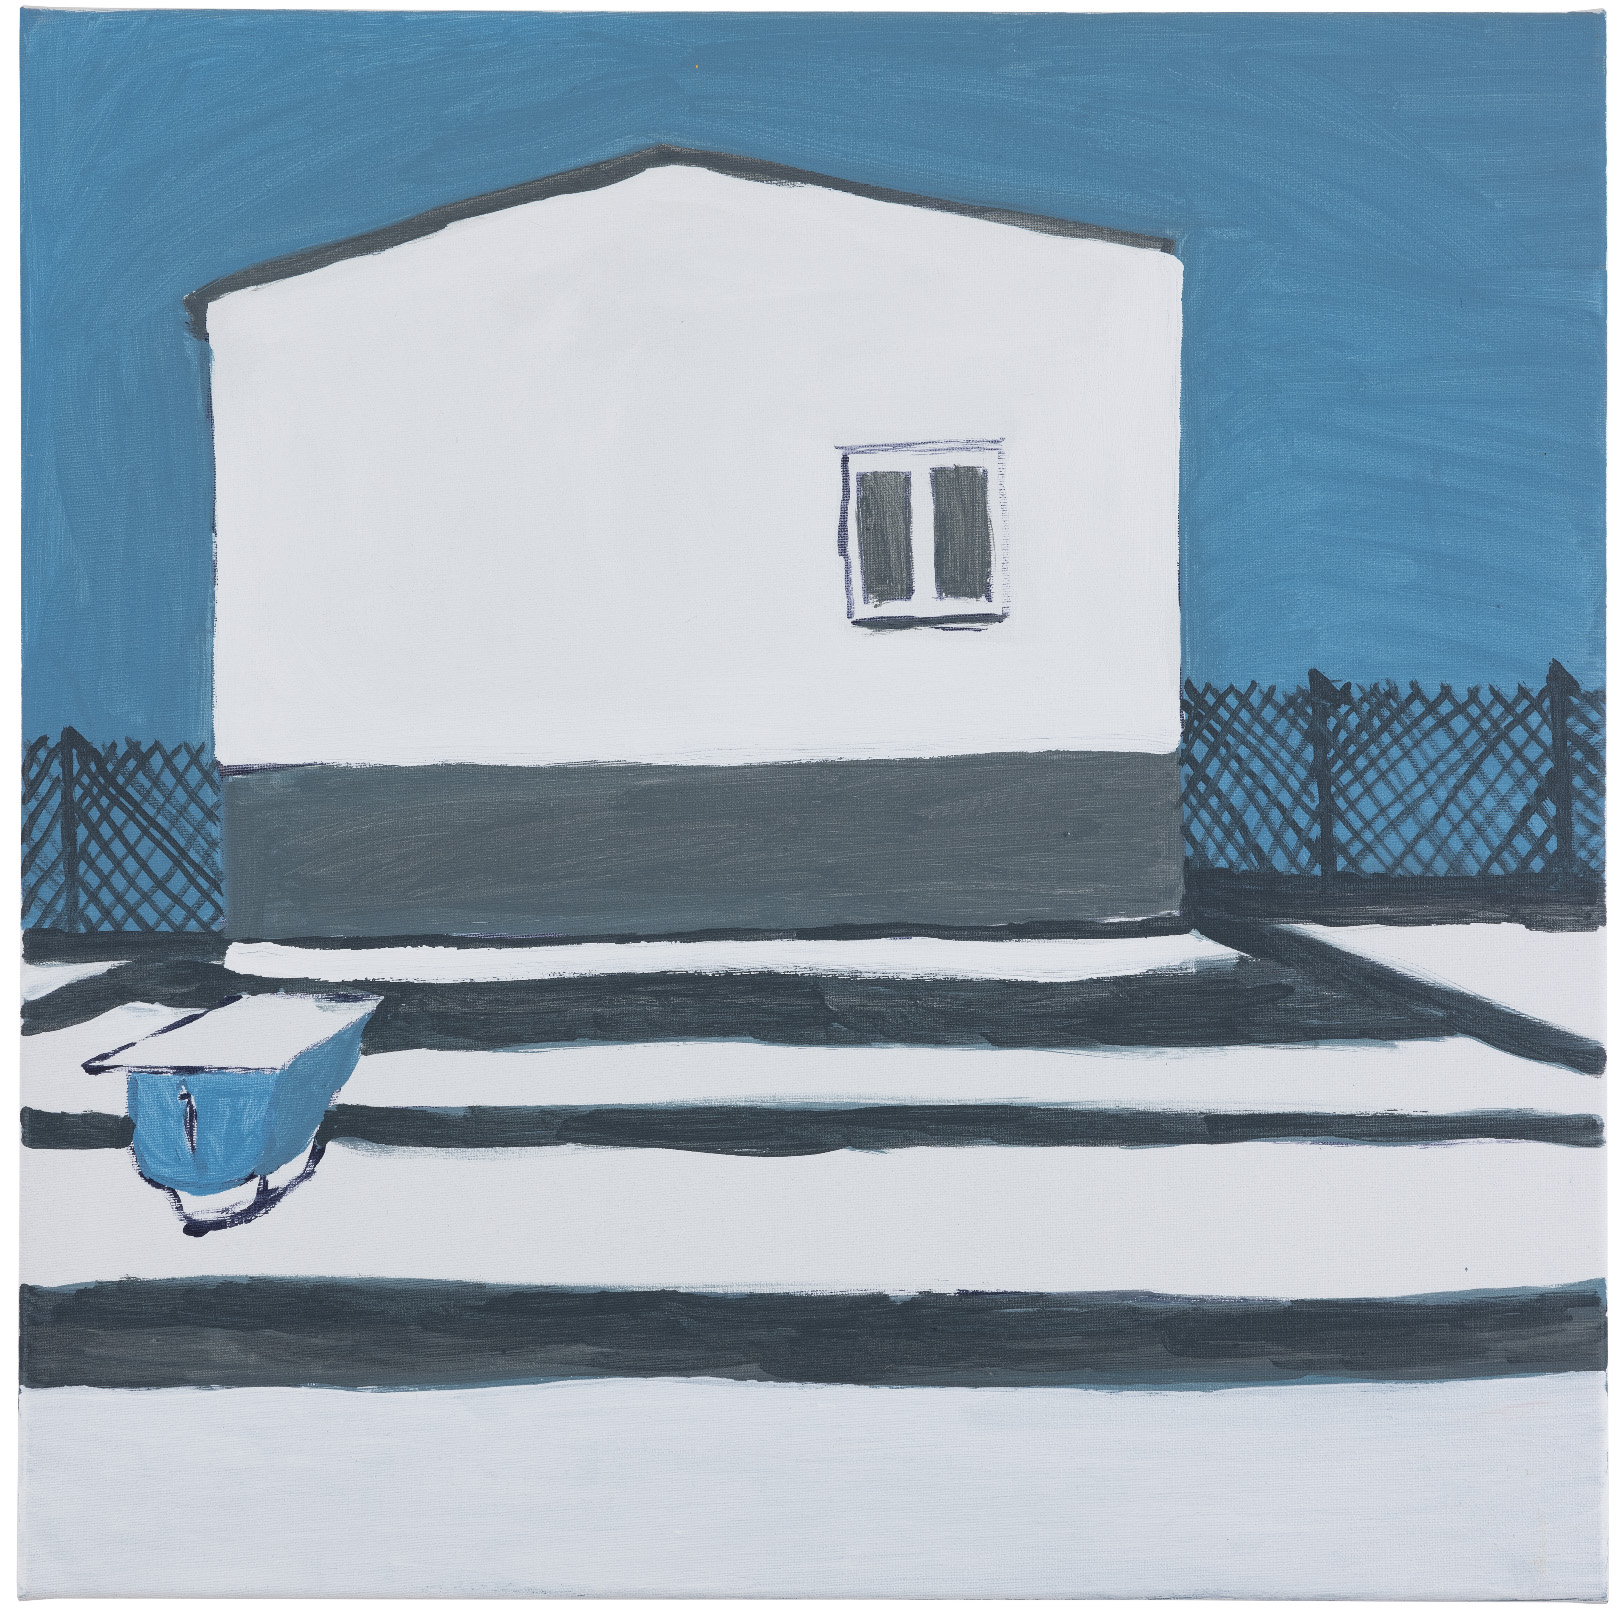 Obraz w formacie kwadratu na który namalowany jest domek z jednym oknem i siatka po bokach. Cały obraz jest w trzech kolorach niebieski biały i szaty. 